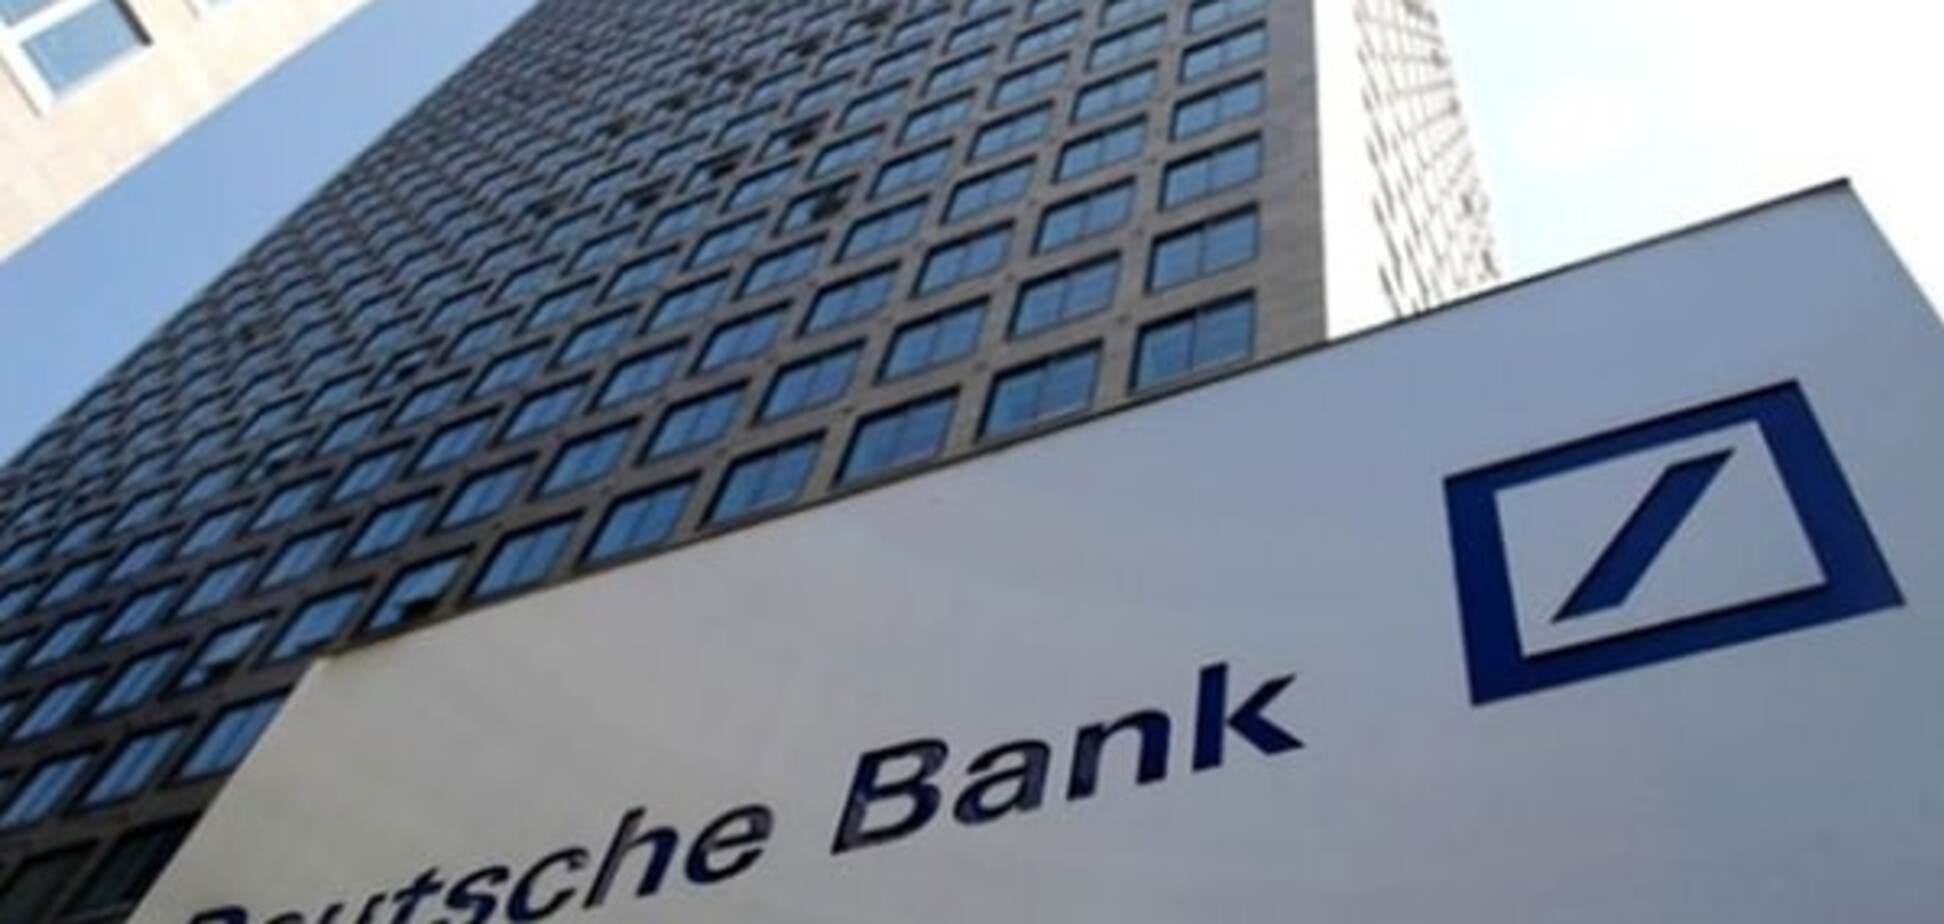 Німецький банк випадково перевів клієнту мільярдну суму - FT